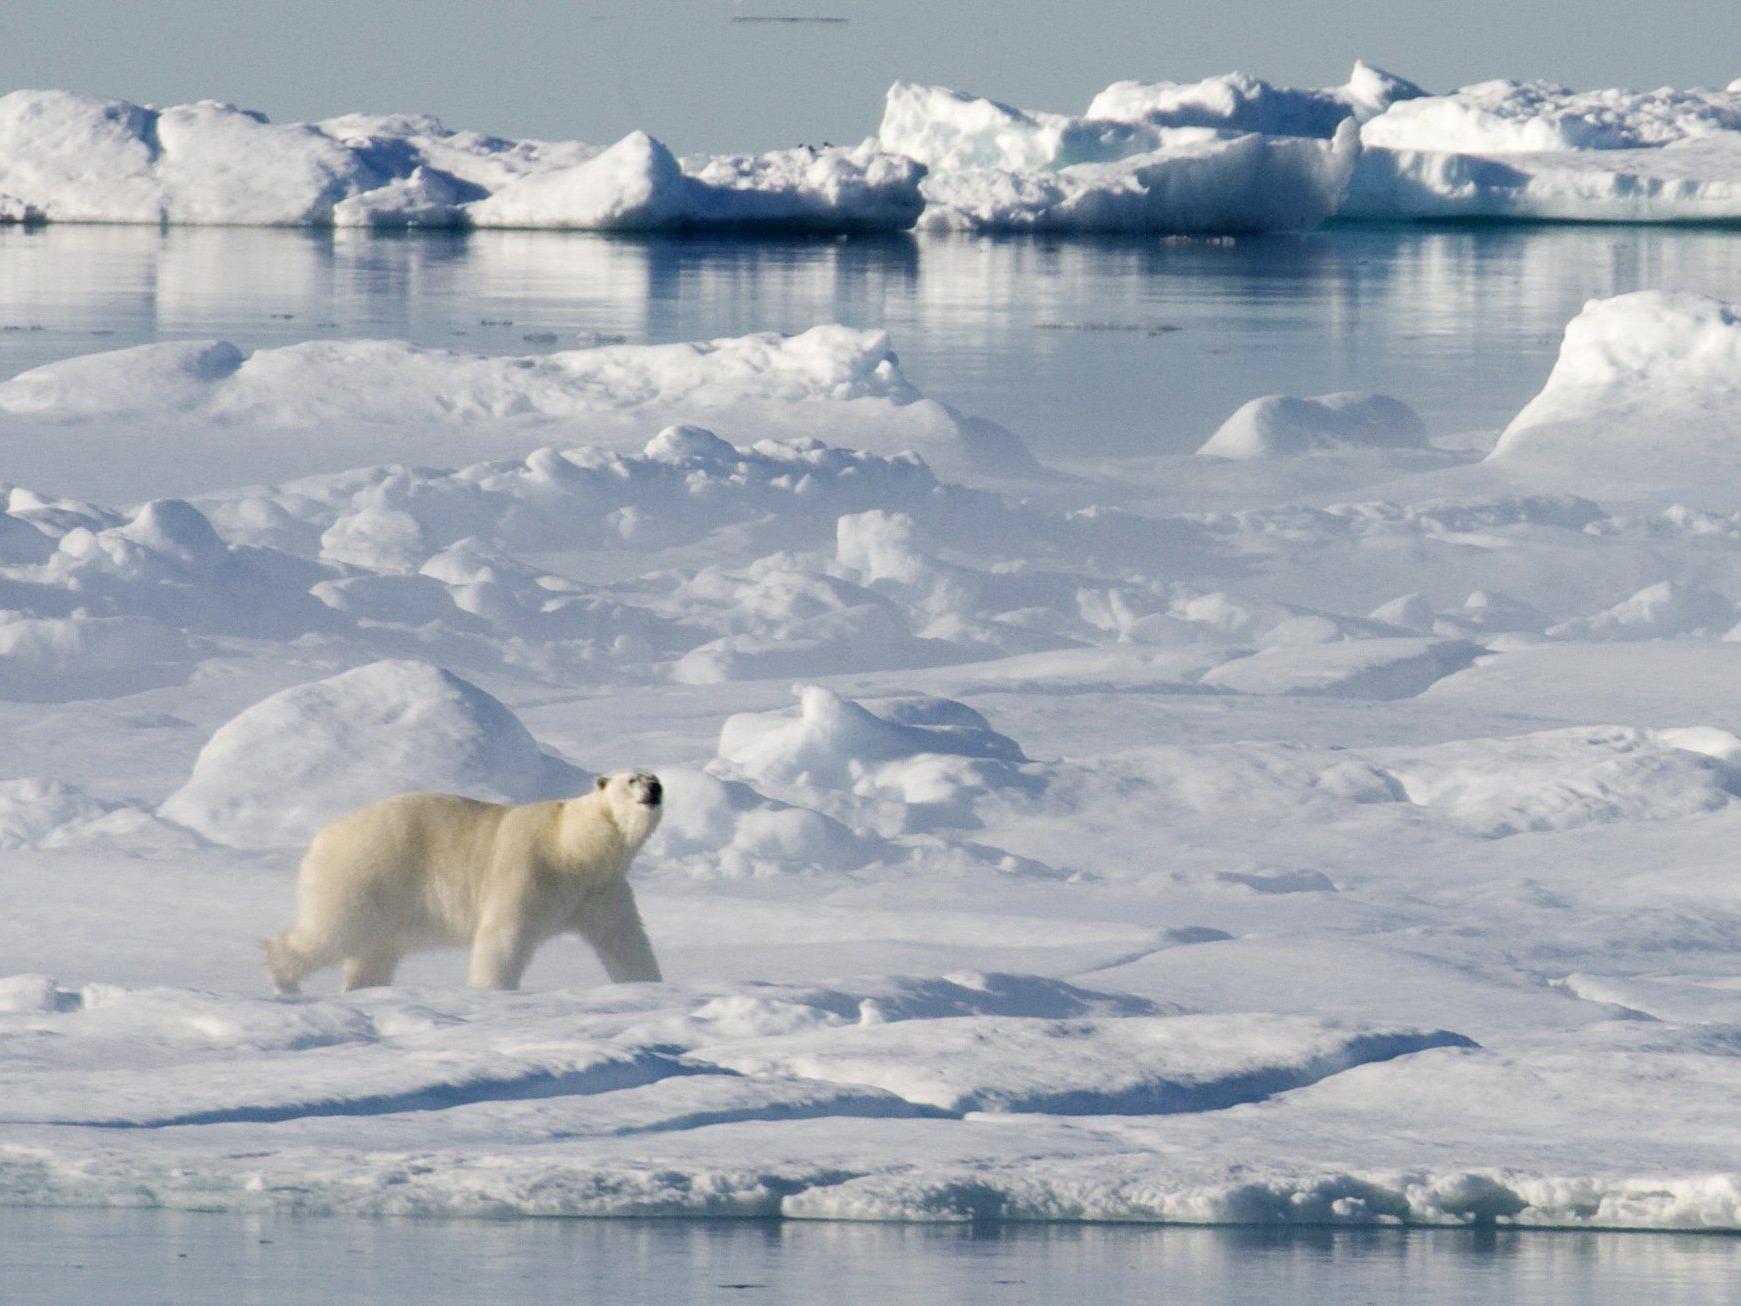 Umweltschützer kritisierten Shell-Genehmigung für Ölbohrungen in Arktis scharf.